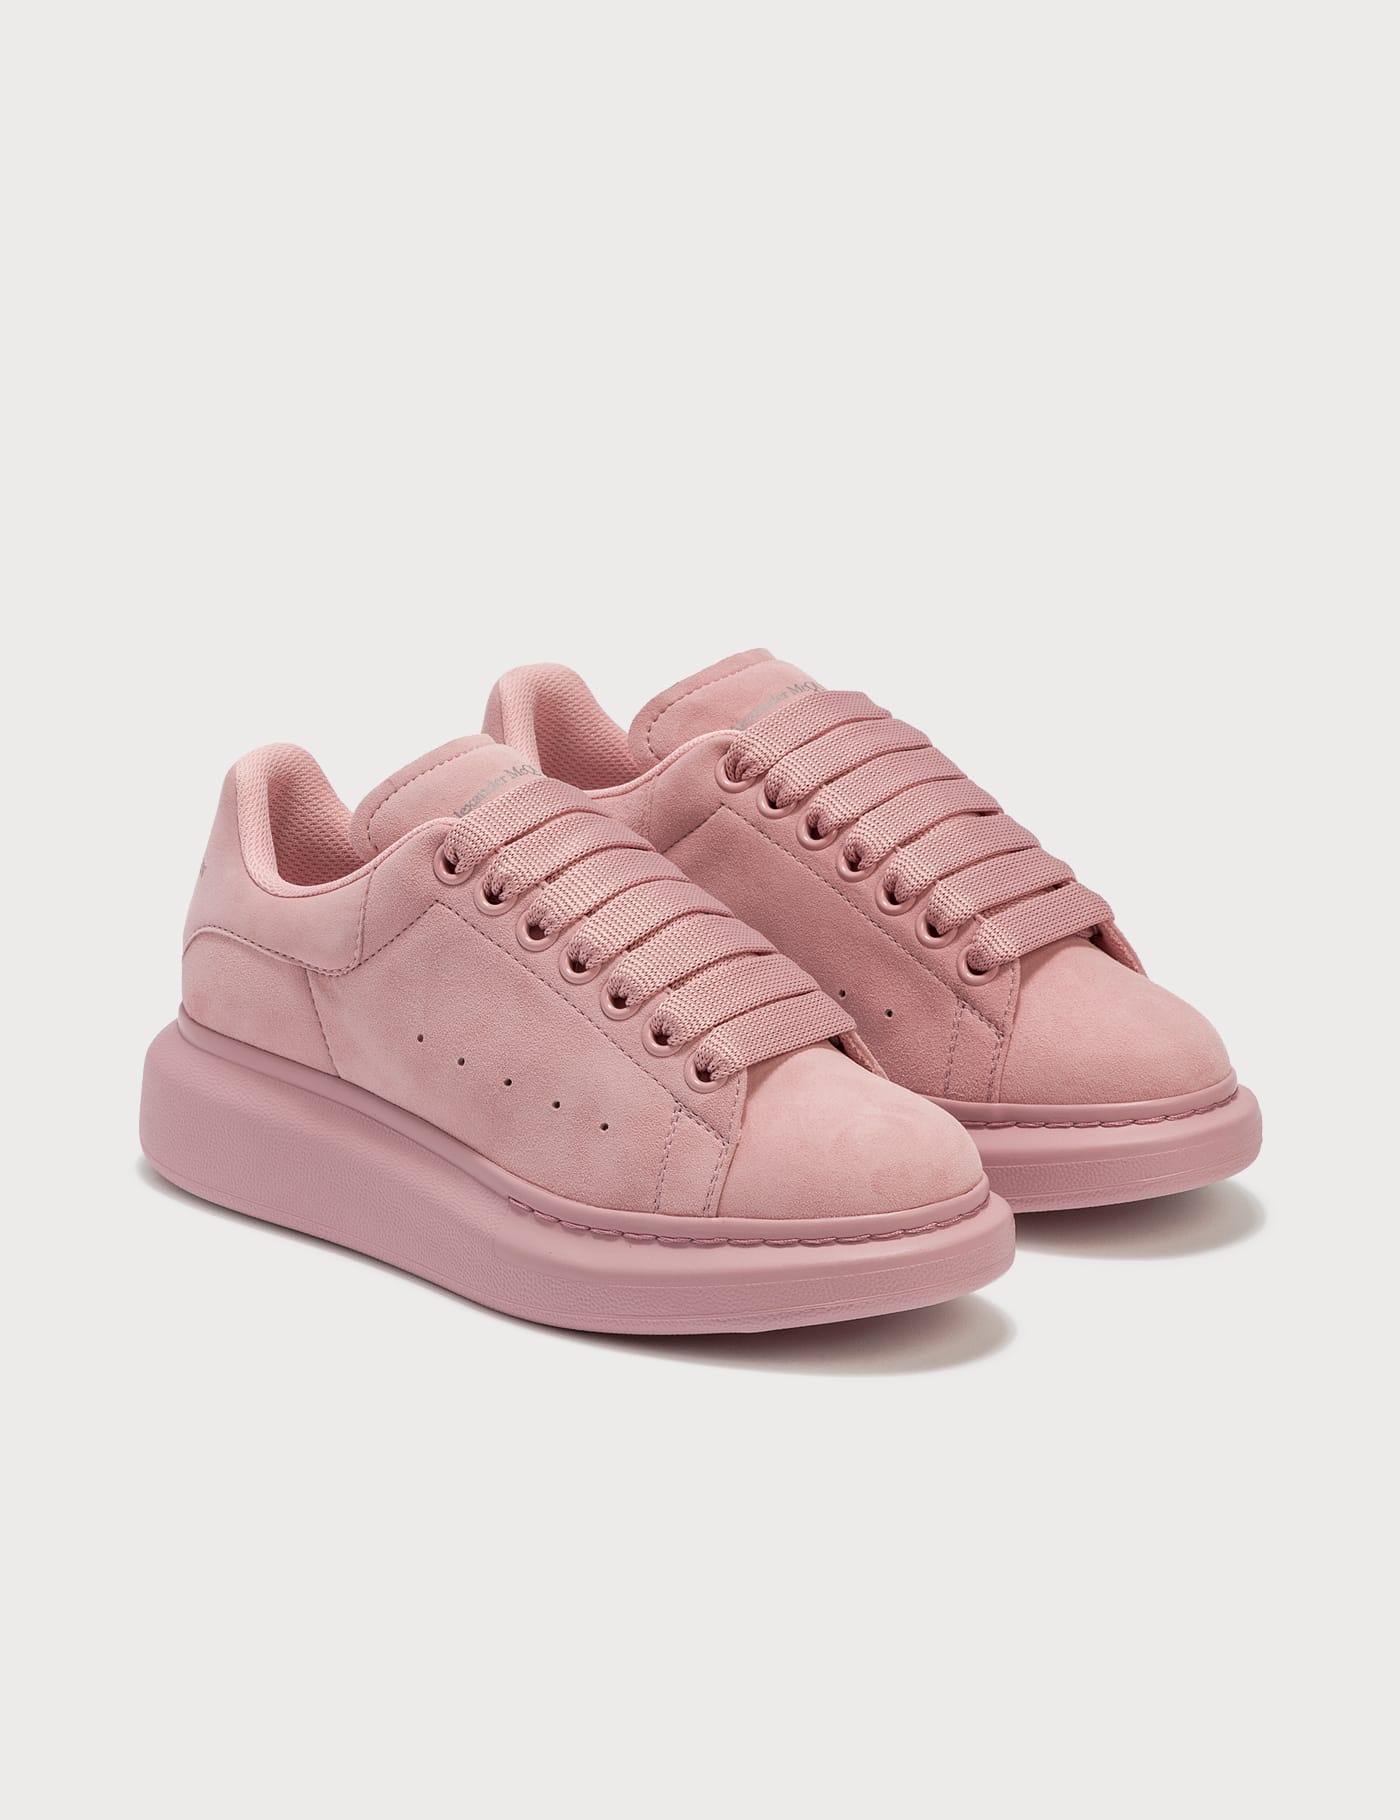 alexander mcqueen oversized sneaker pink